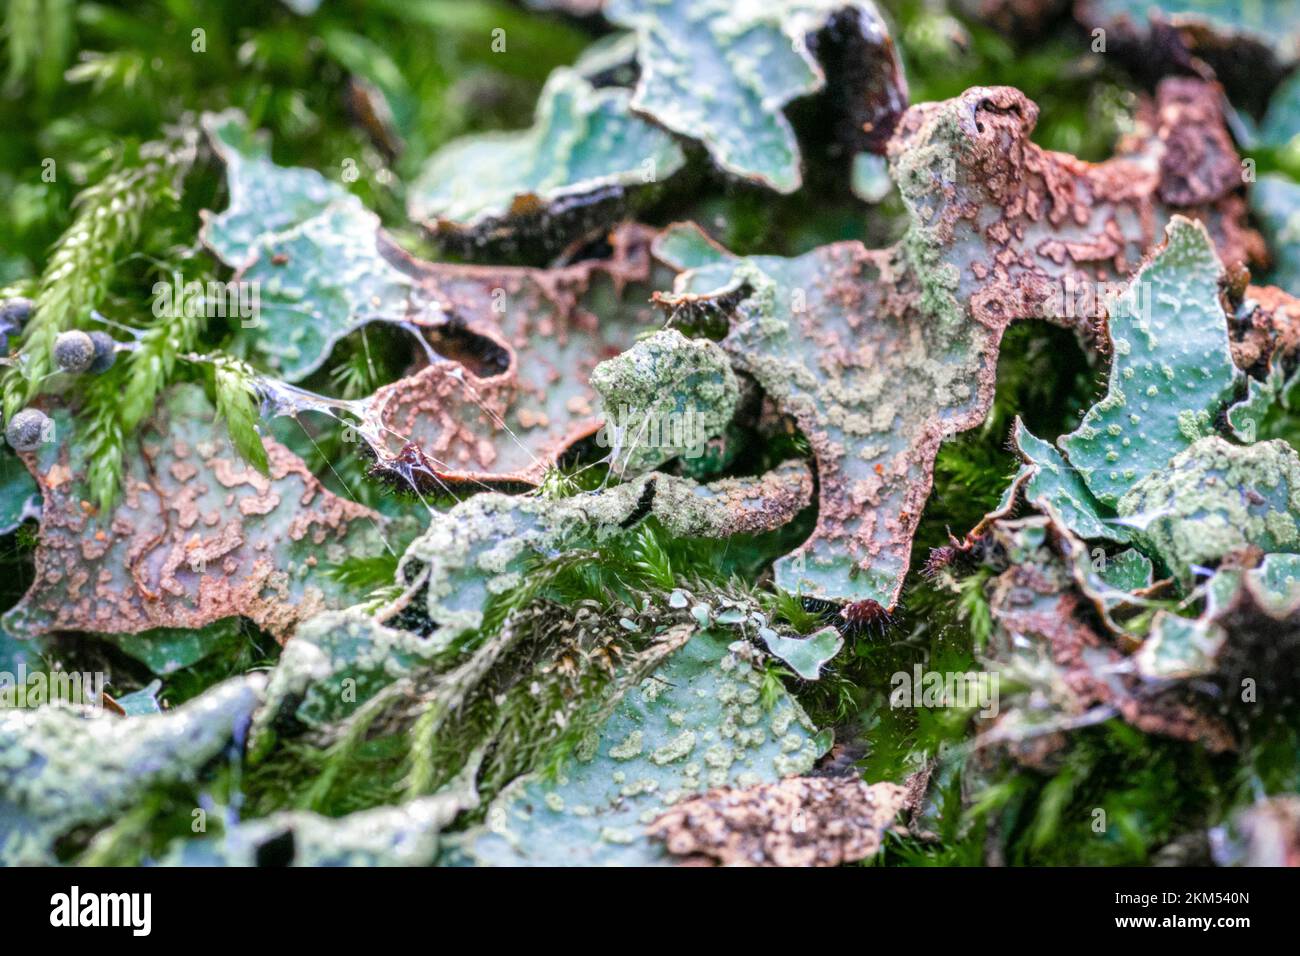 Macrofo di licheni verdi di fine fogliose rosse che assomiglia alle foglie con muschio Foto Stock